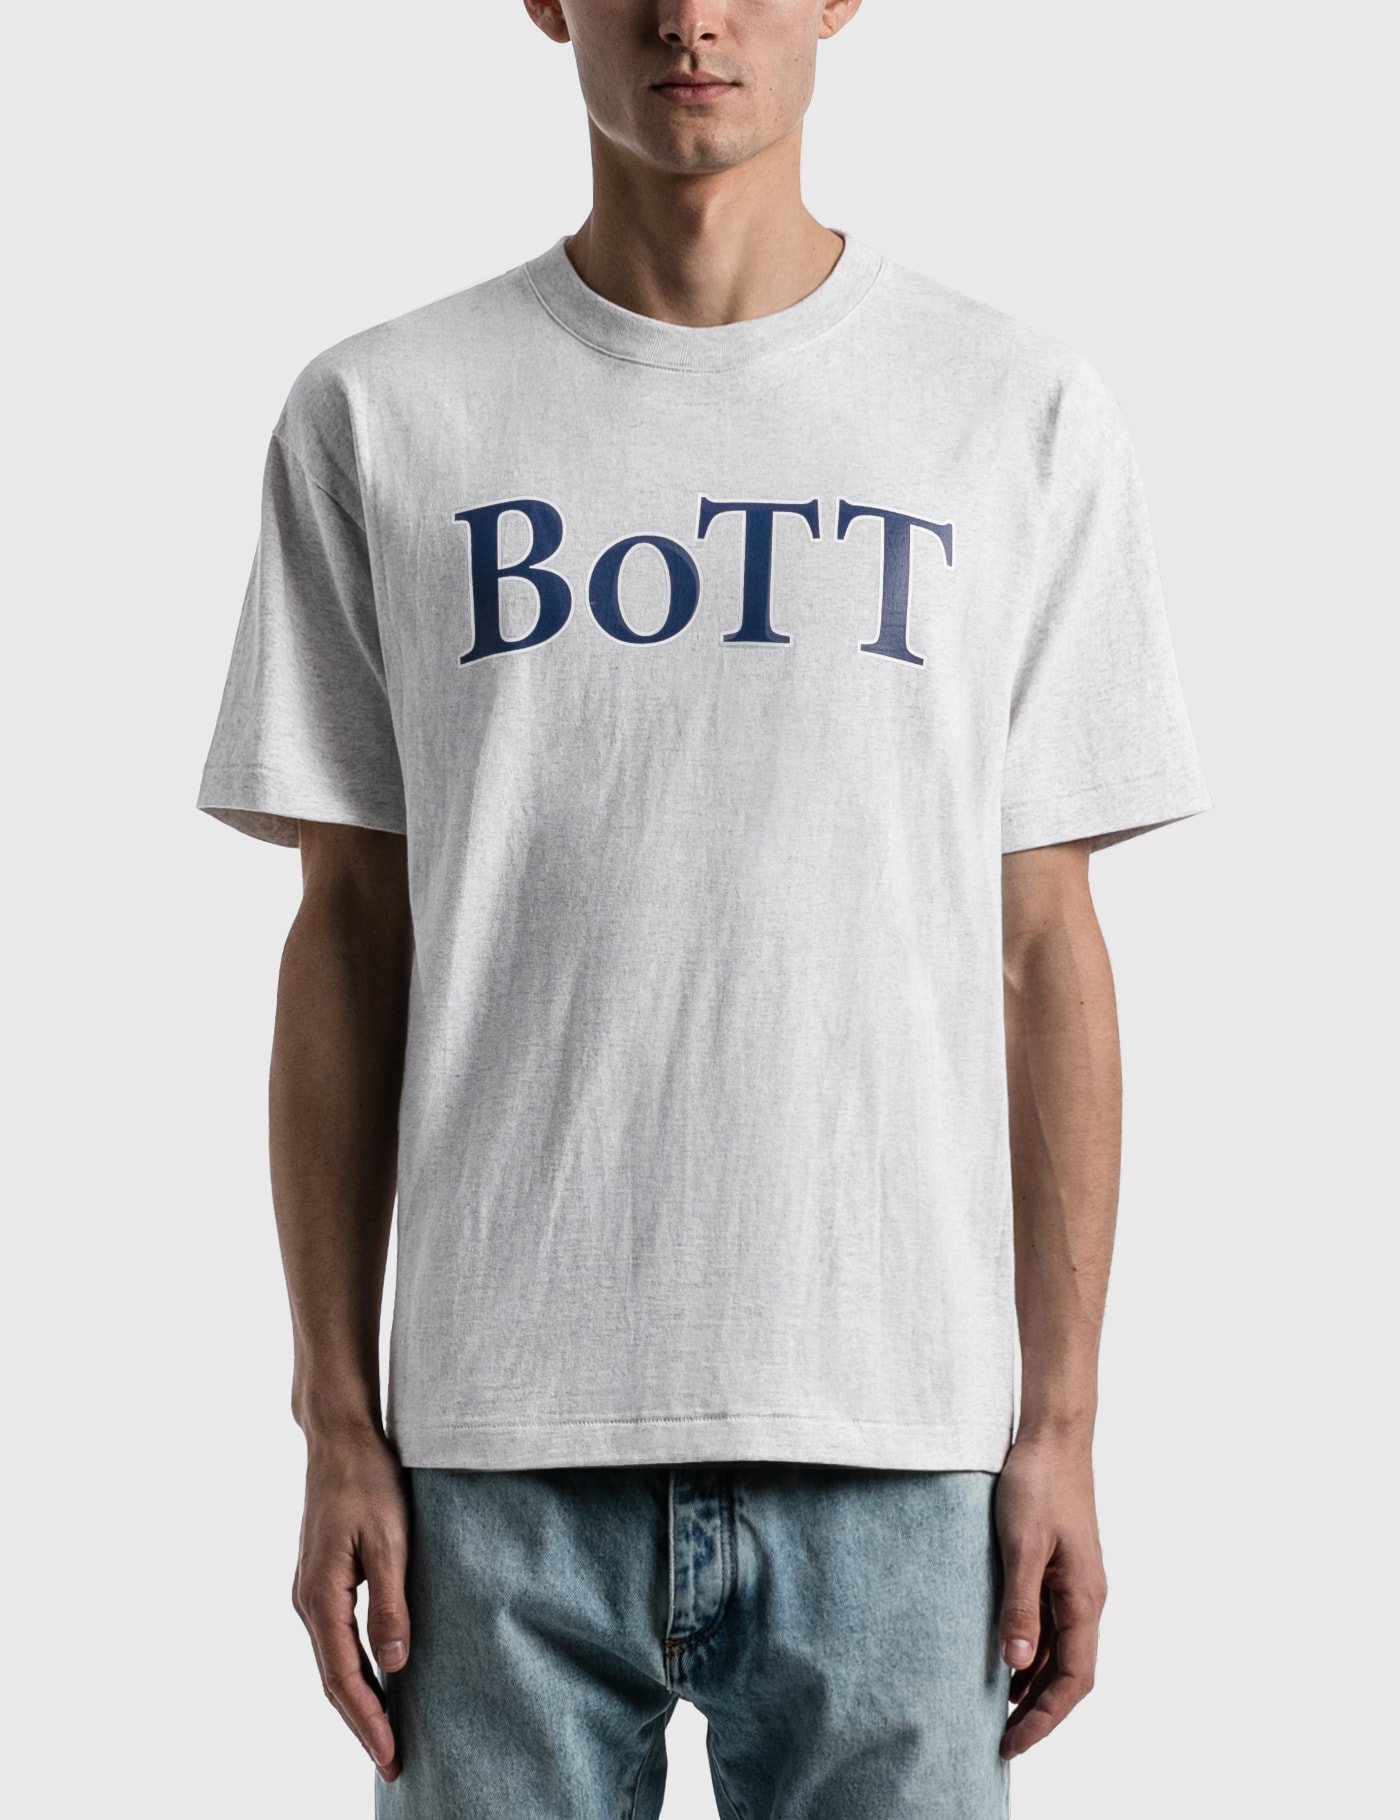 BoTT - BoTT OG Logo T-shirt | HBX